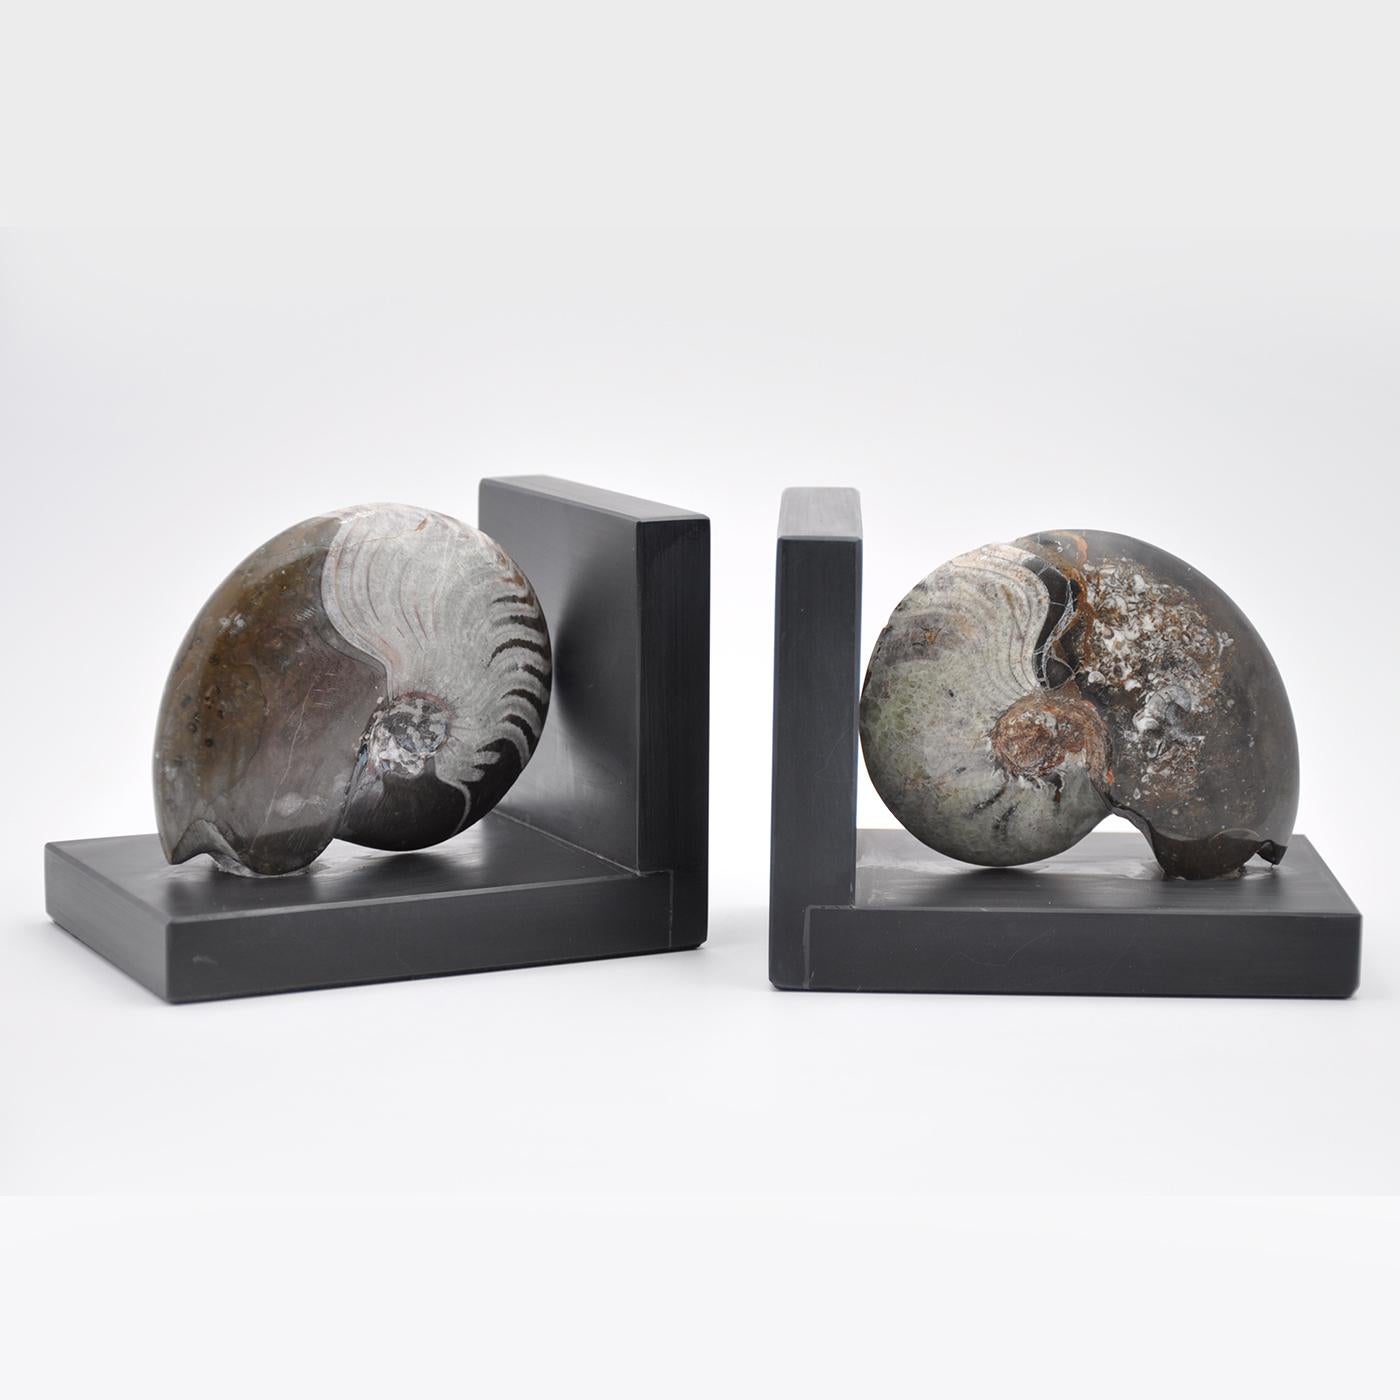 Die Skulptur Ammonite Booksends verbindet auf elegante Weise zeitgenössisches Design mit den authentischen fossilen Muscheln, die auf Millionen von Jahren zurückgehen. Design Center liebt die Form und Textur dieses Ammonitenfossils auf einem